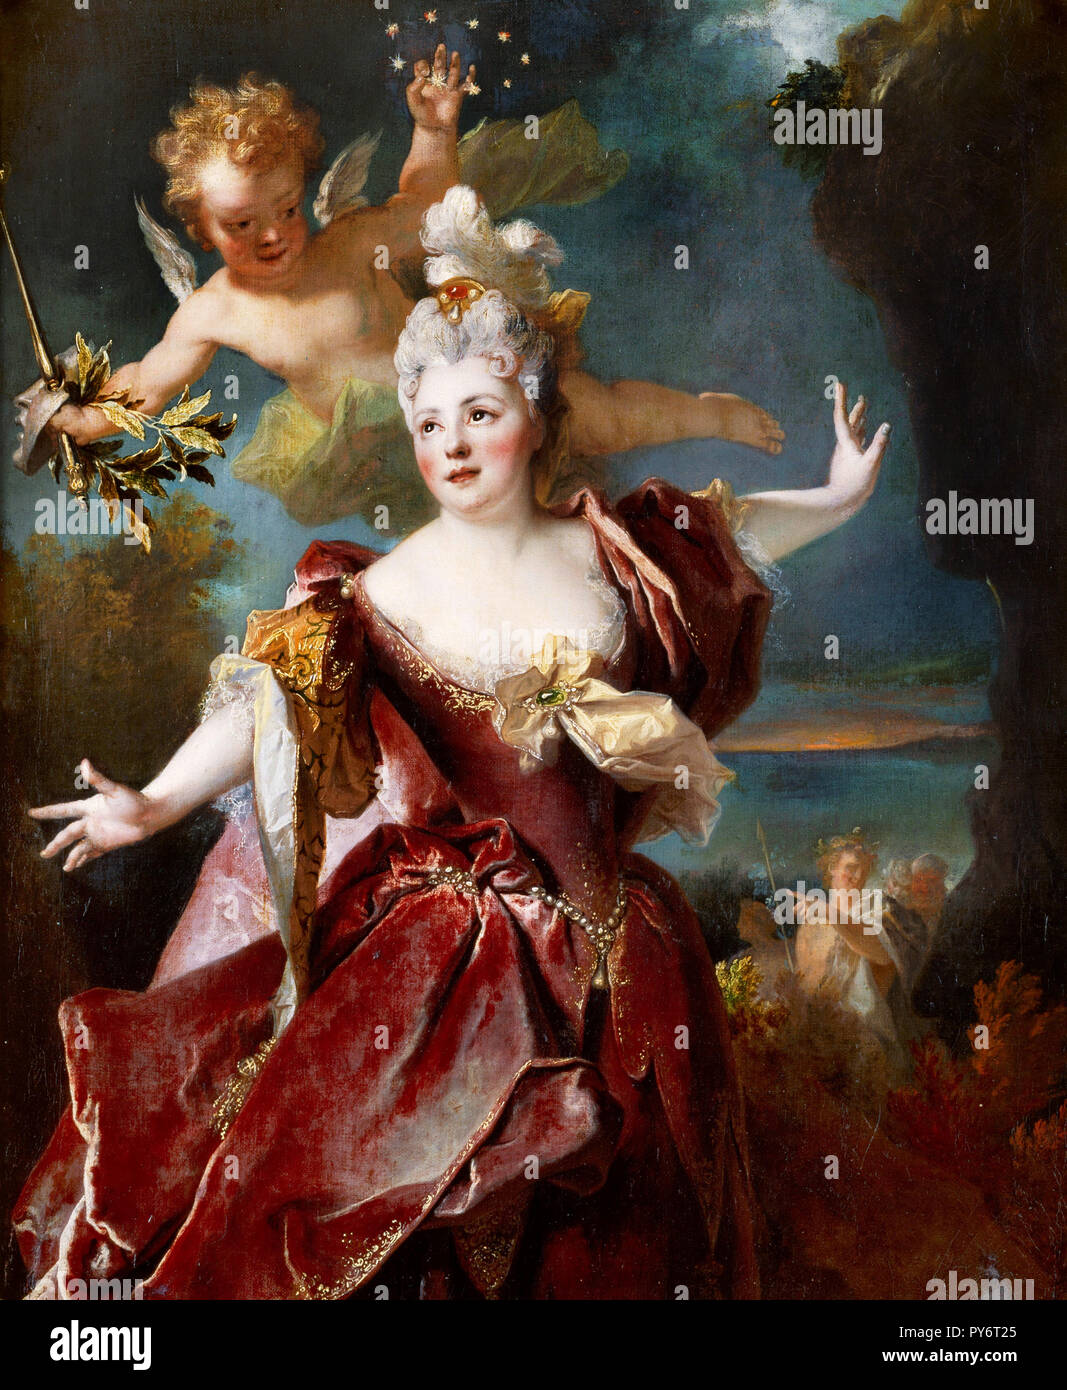 Nicolas de Largilliere, Portrait de l'actrice Marie-Anne de Chateauneuf, connu sous le nom de Mlle Duclos (1664-1747), comme Ariane, vers 1712 huile sur toile, Musée Condé, Chantilly, France. Banque D'Images